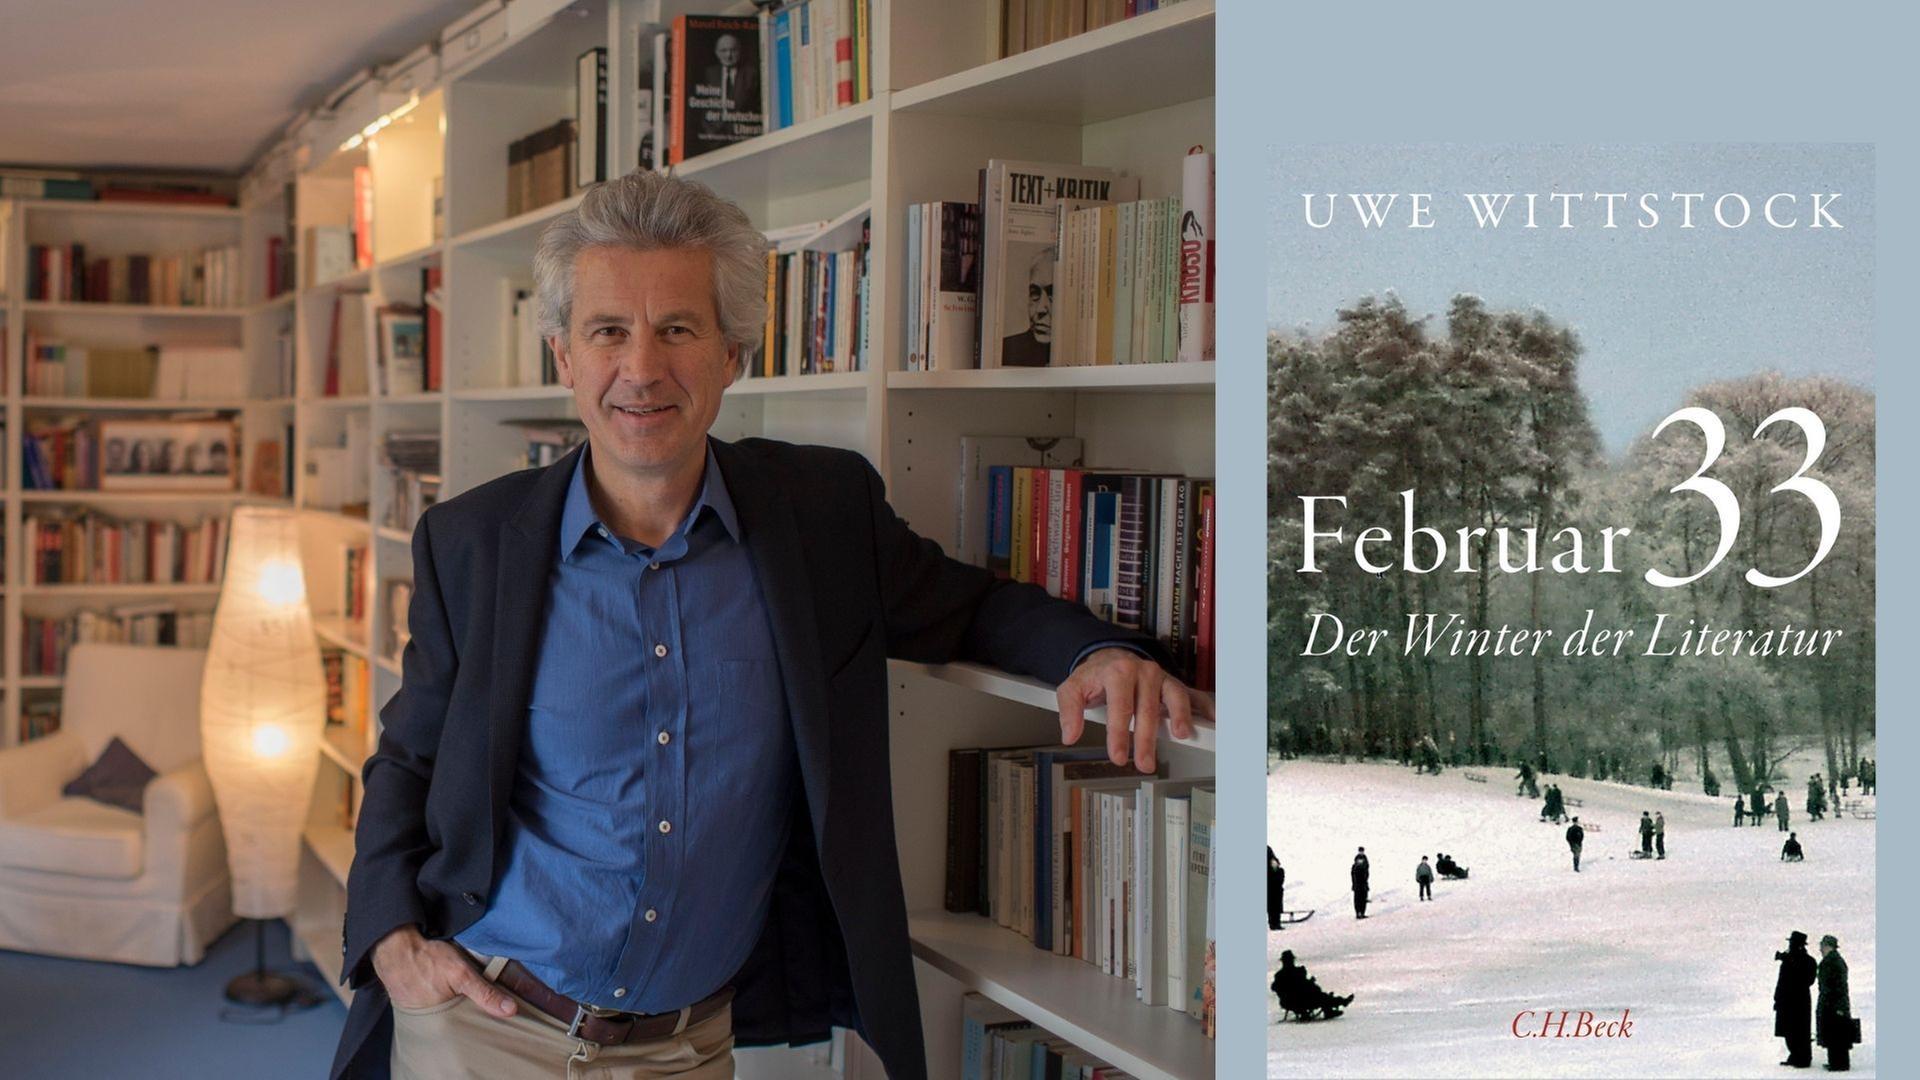 Uwe Wittstock: "Februar 33- Der Winter der Literatur"
Zu sehen sind der Autor und das Cover zu seinem Buch